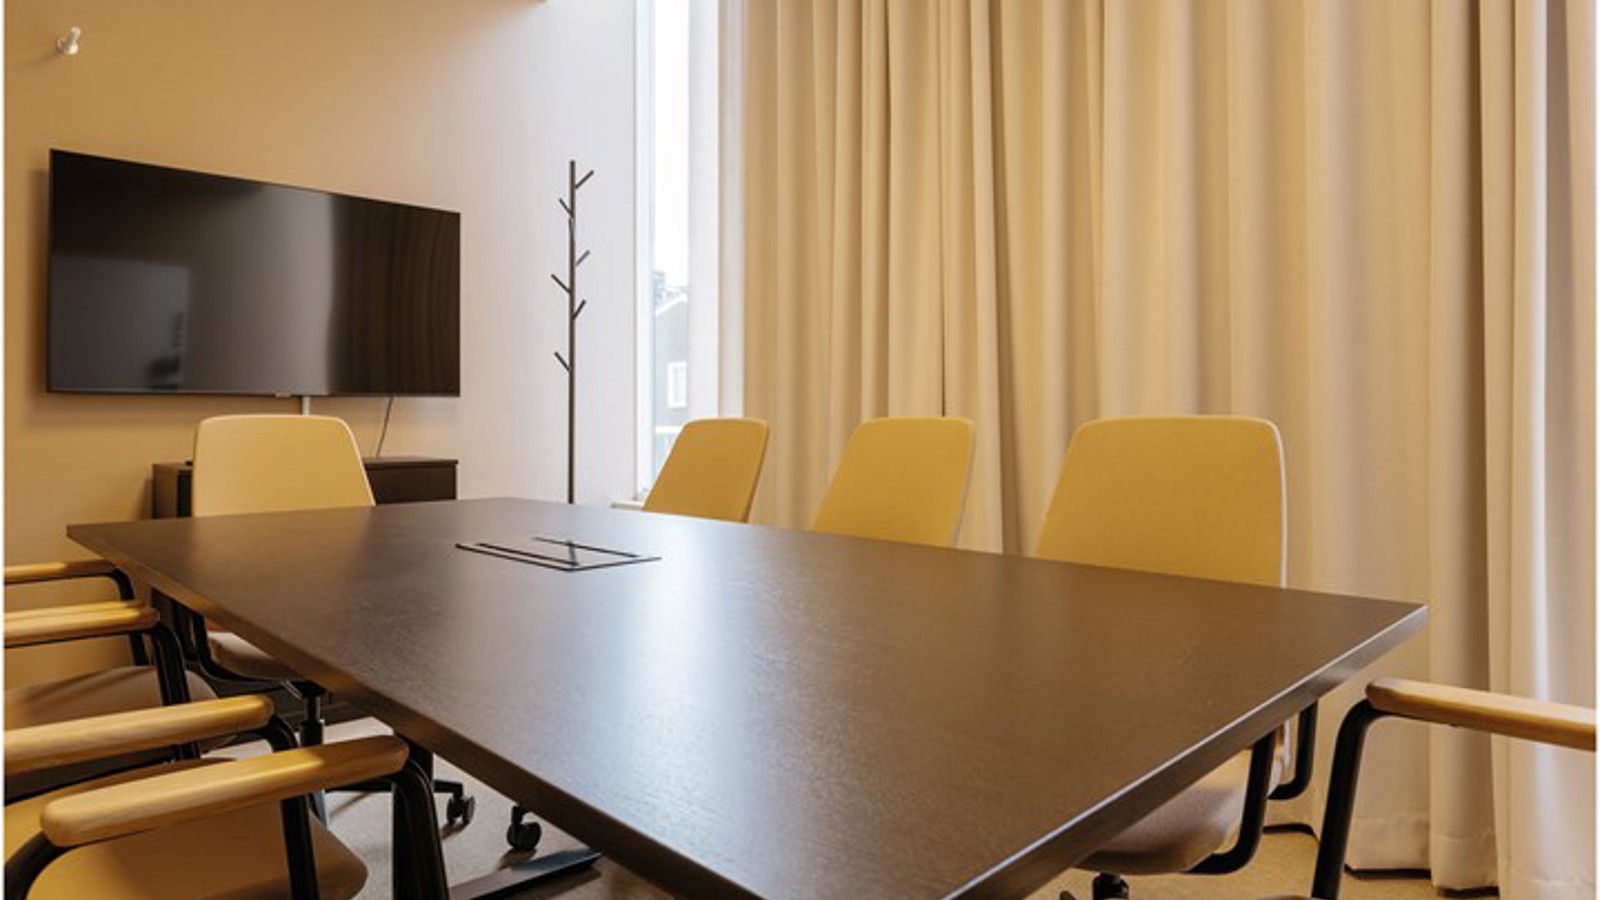 Konferensrum med styrelsesittning i gula toner med tv, brunt bord och draperi